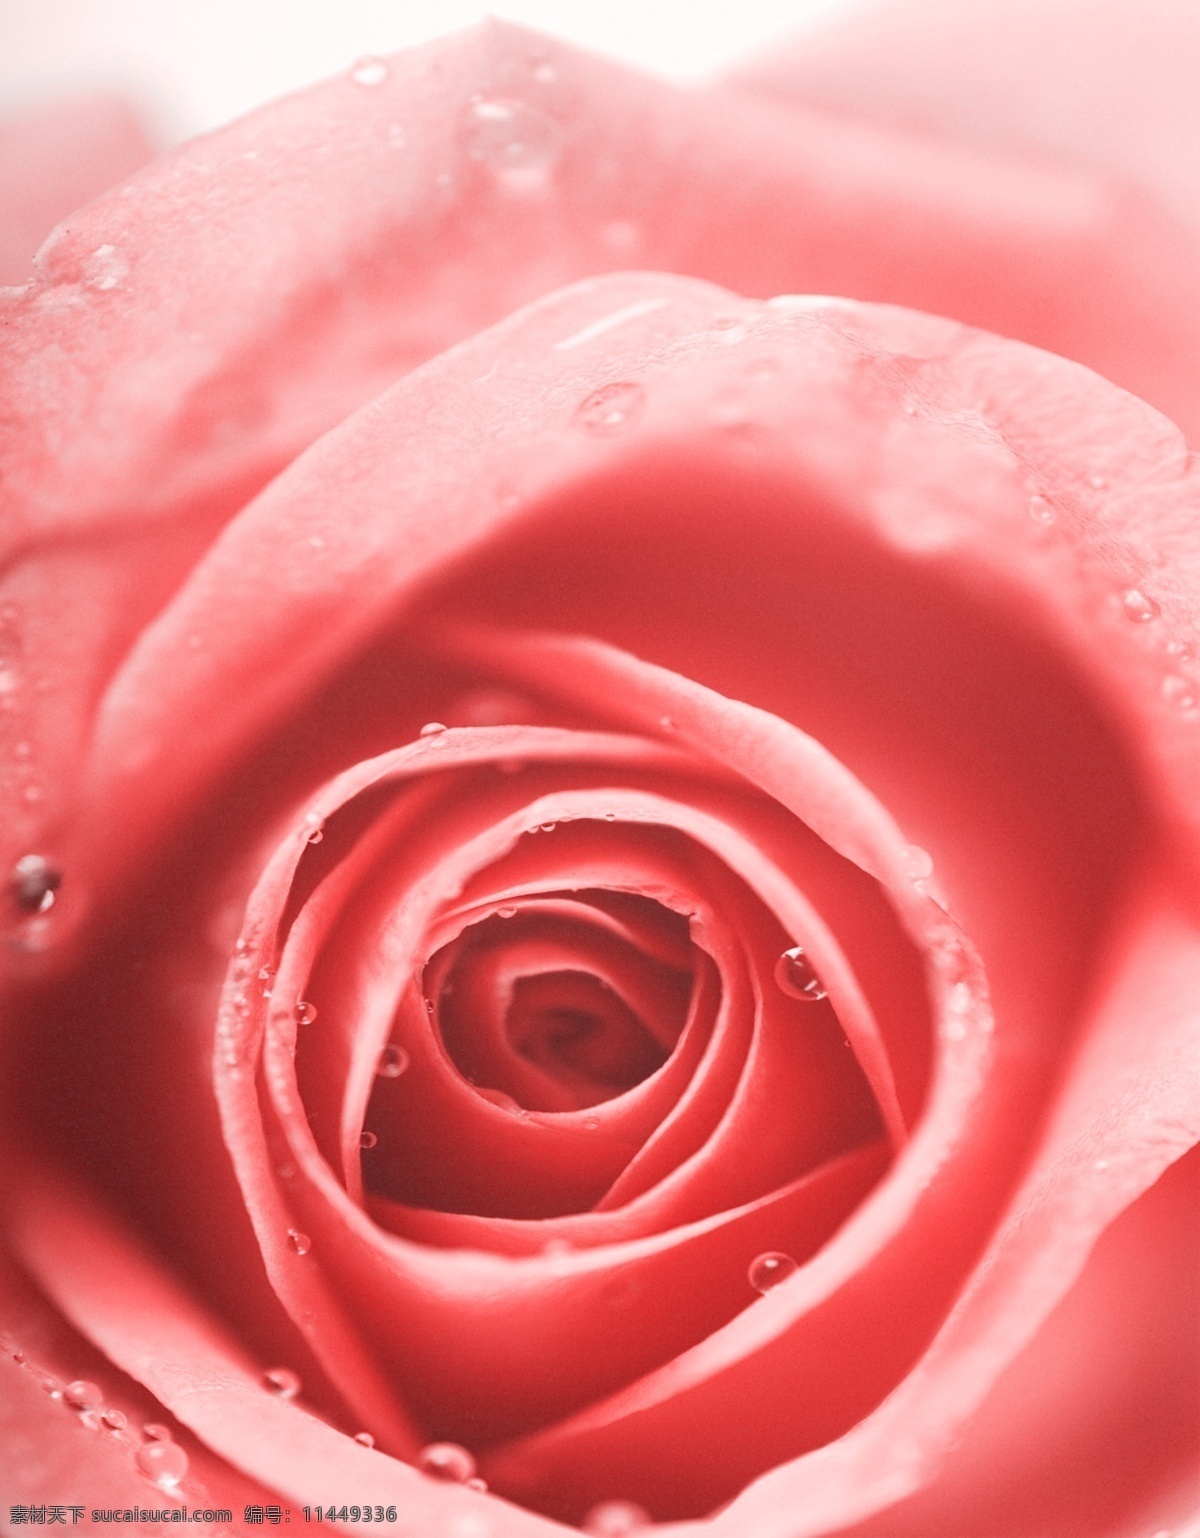 花朵 水珠 玫瑰花 花卉 红玫瑰 水滴 背景元素 广告元素